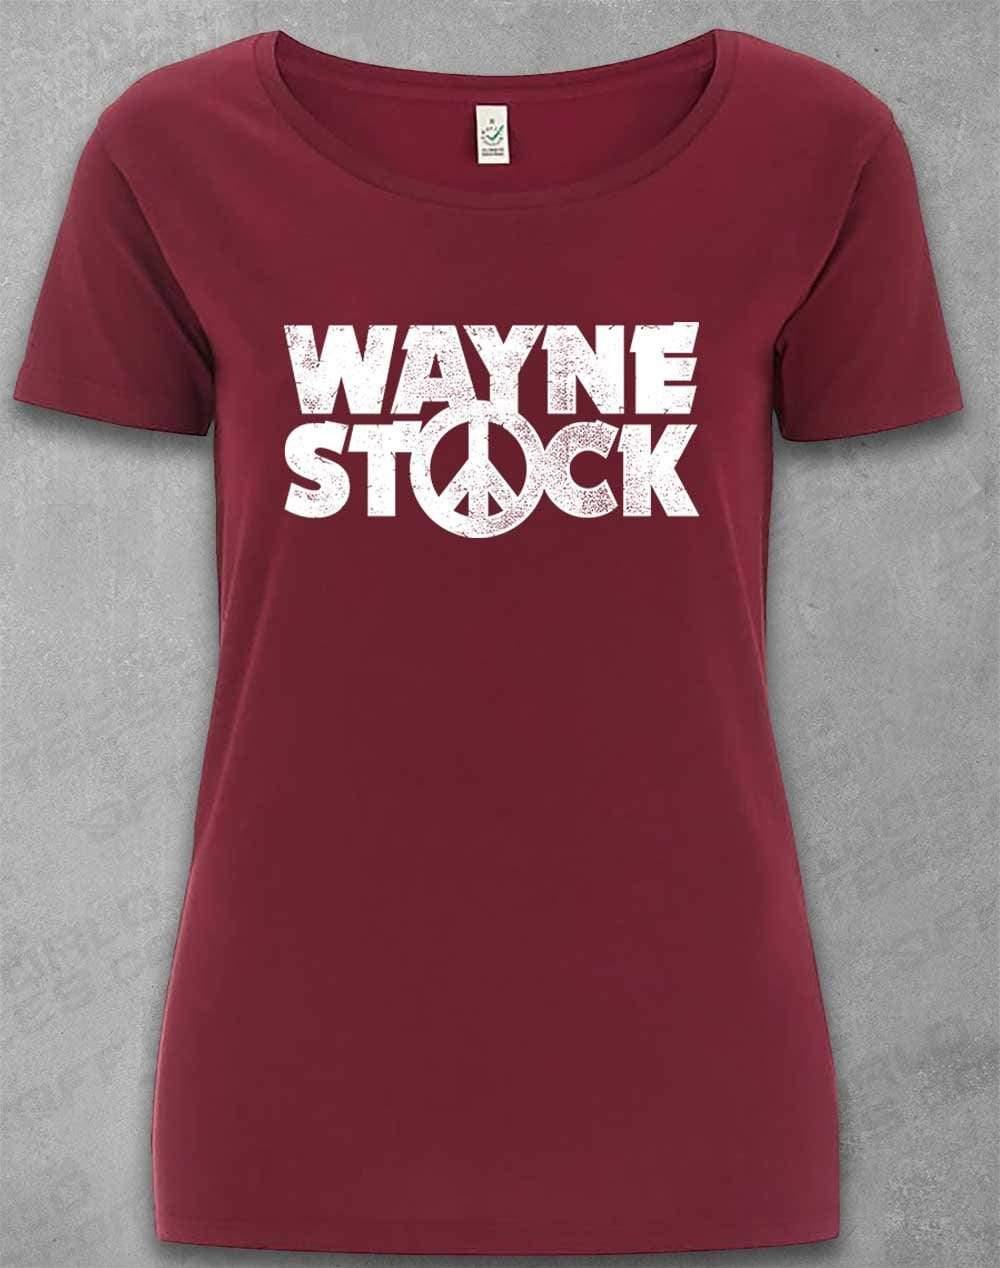 DELUXE Waynestock Organic Scoop Neck T-Shirt 8-10 / Burgundy  - Off World Tees